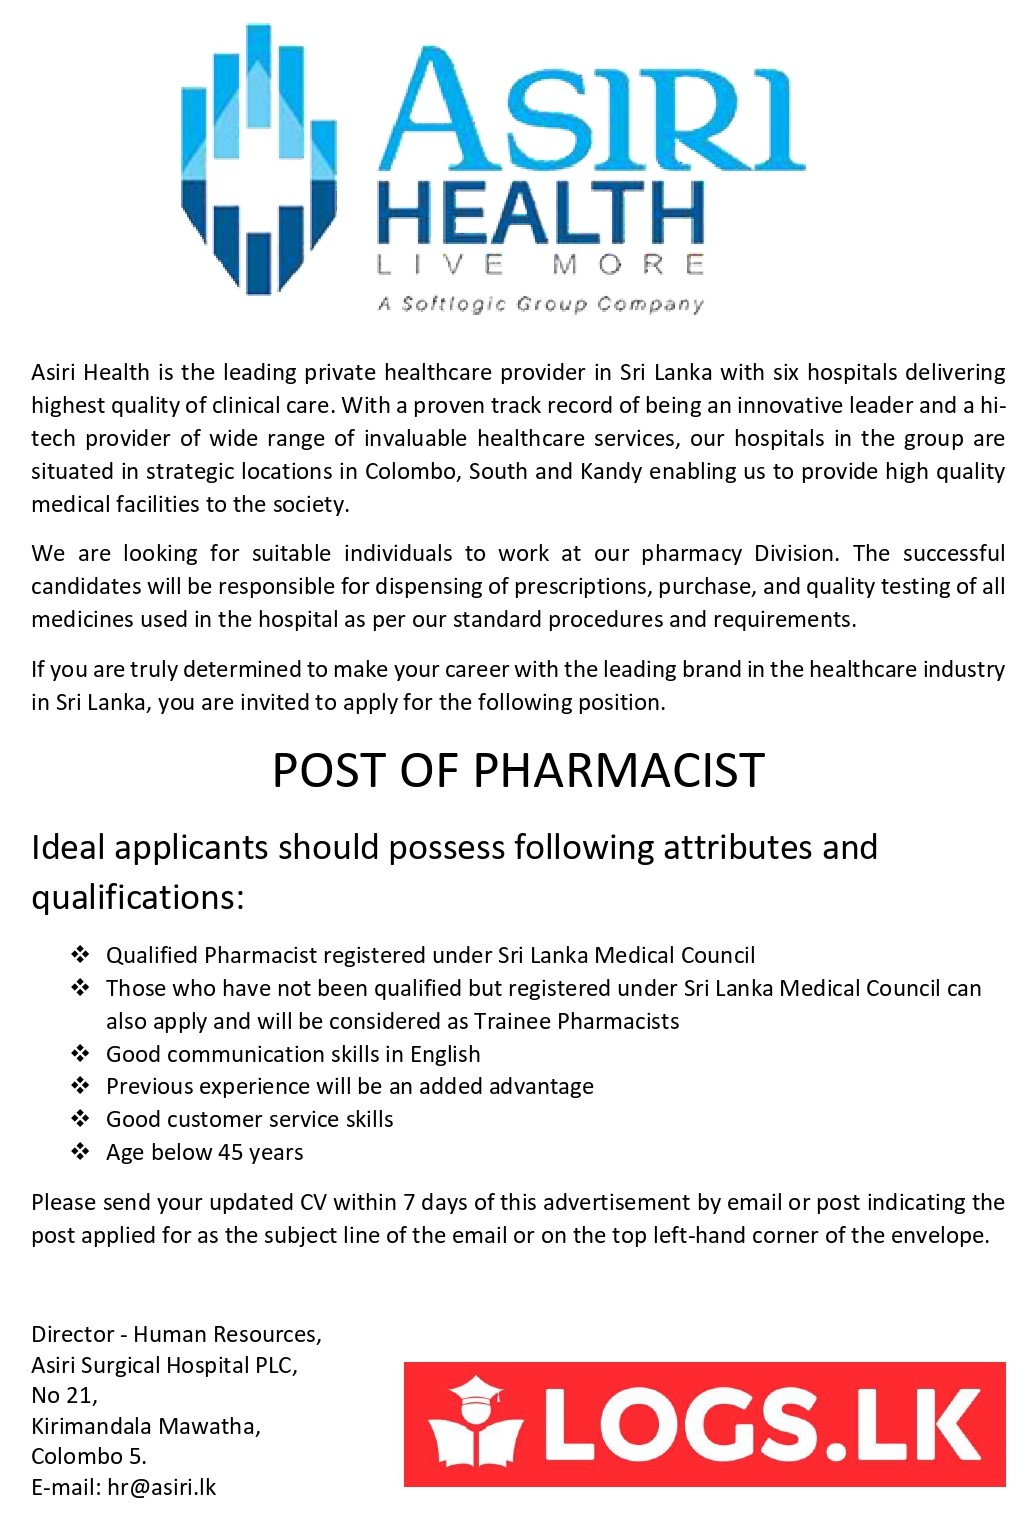 Pharmacist Jobs Vacancies - Asiri Hospital Jobs Vacancies in Sri Lanka